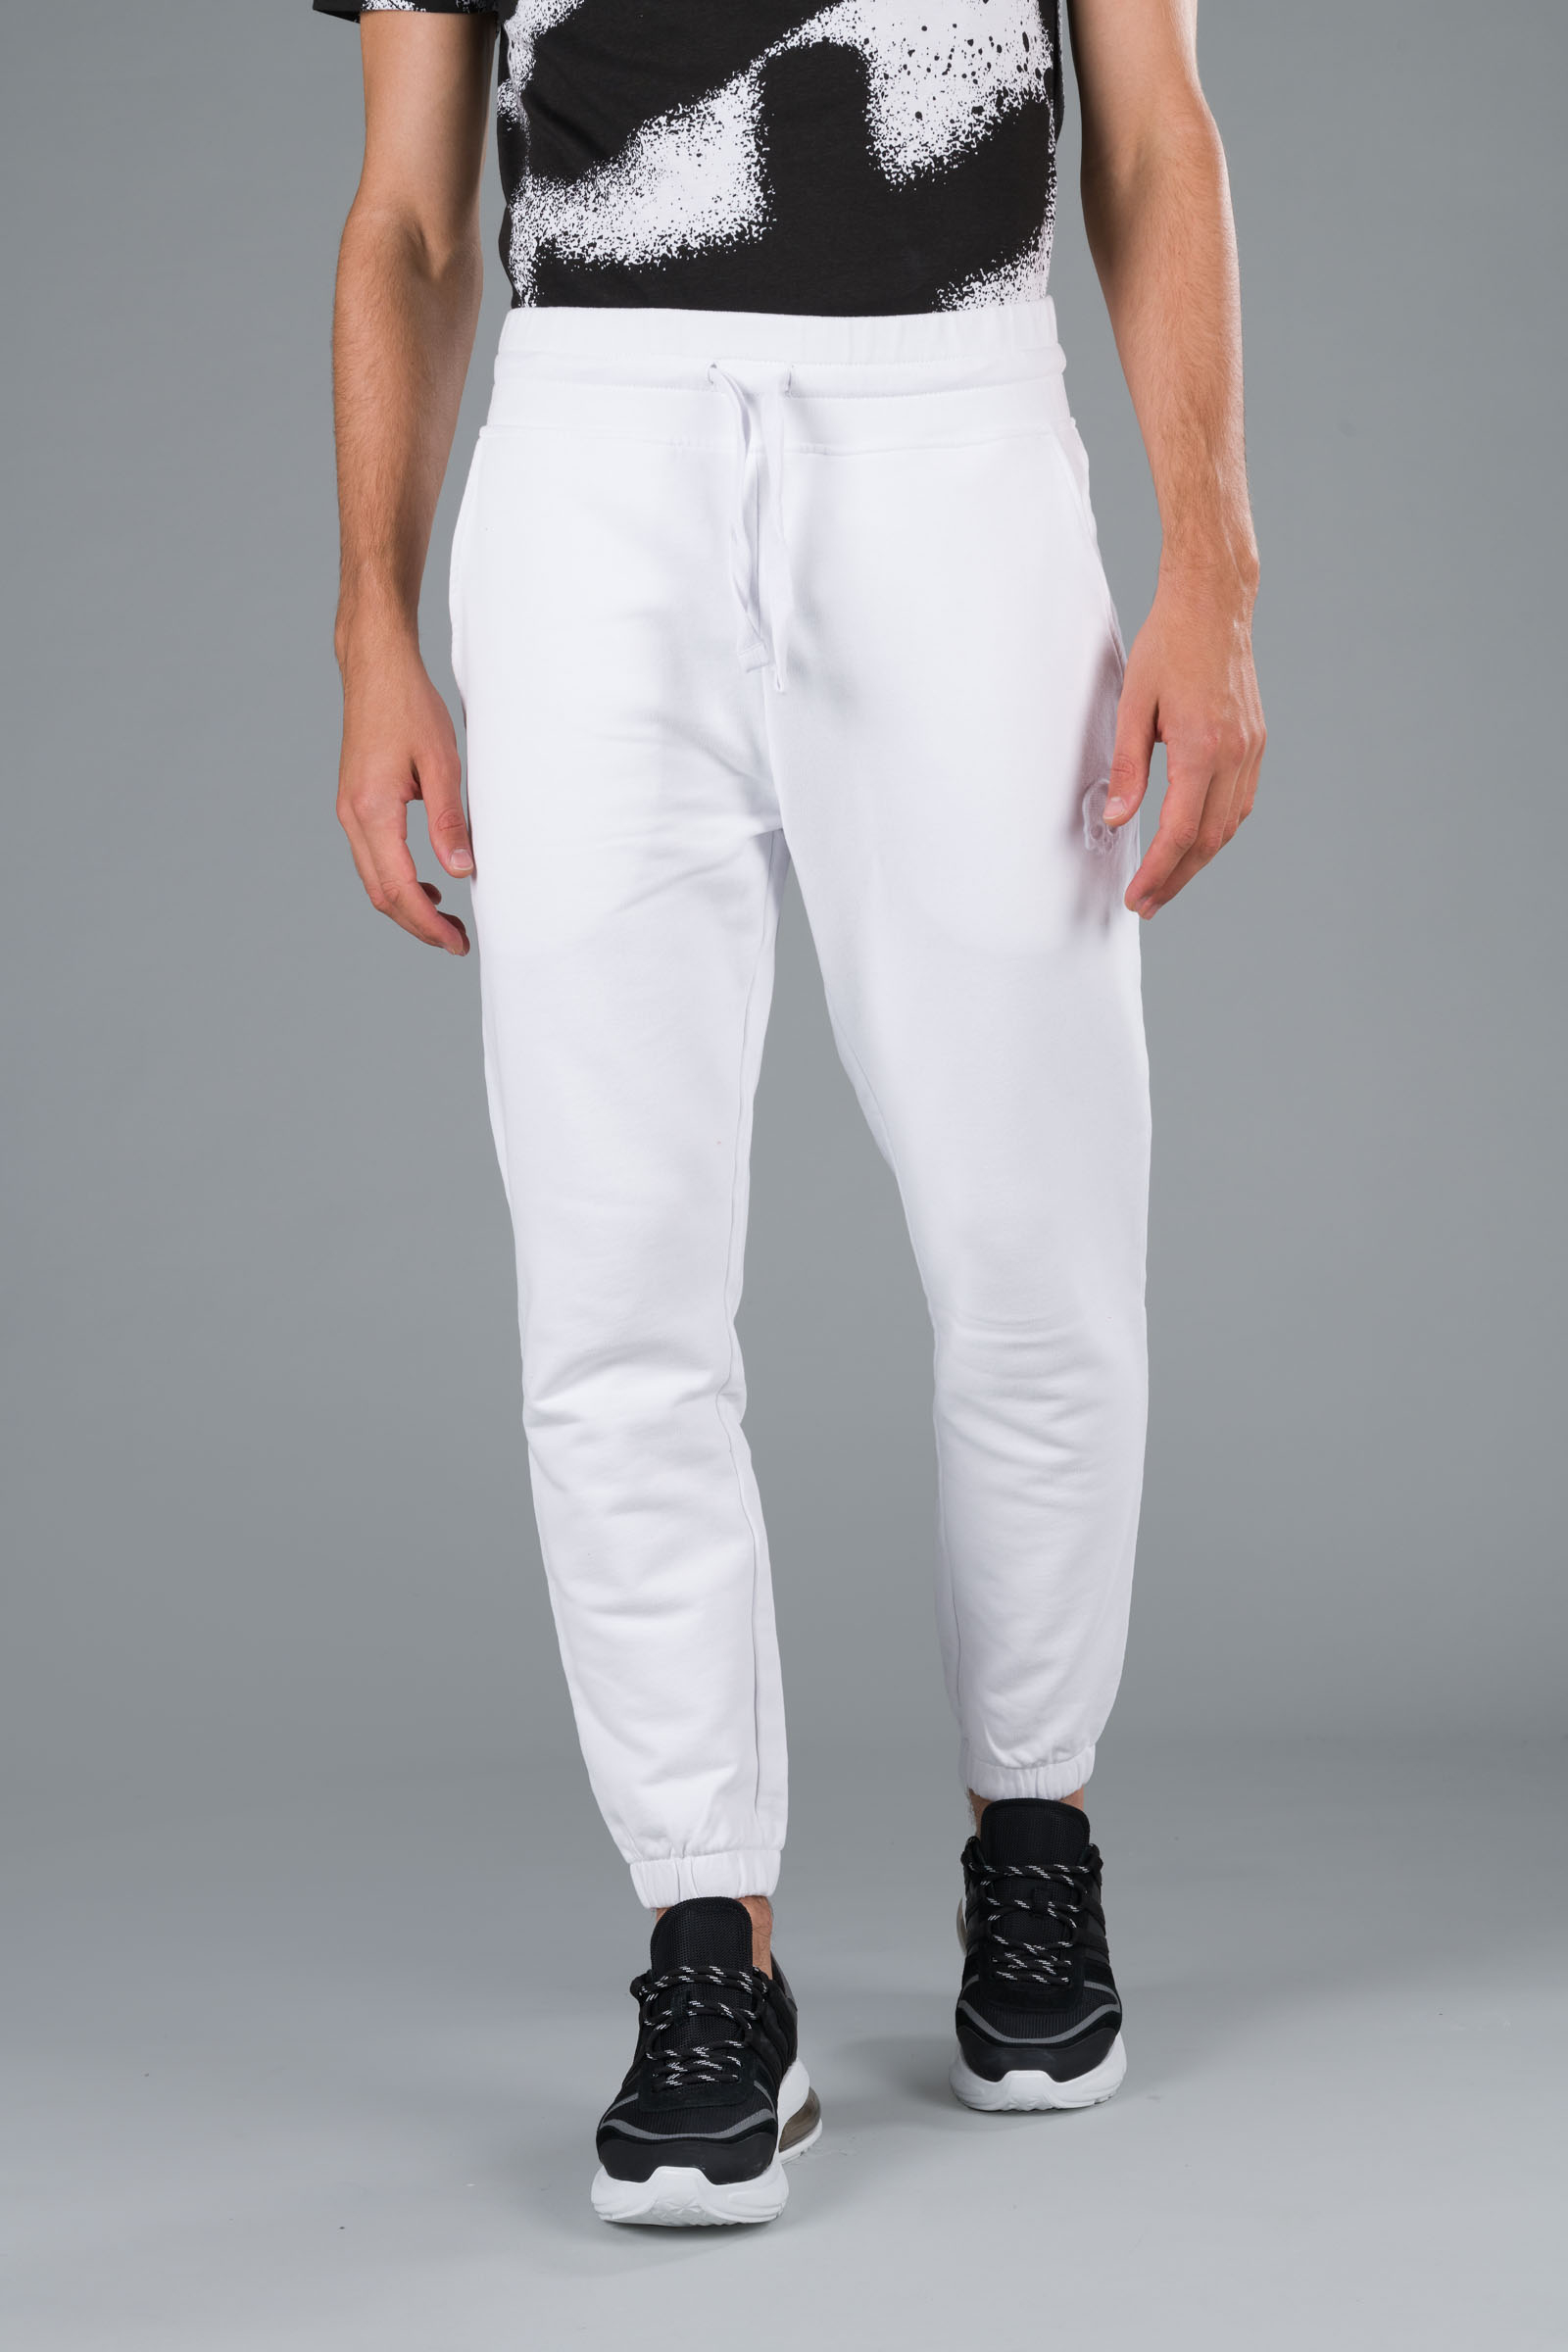 SKULL SWEATPANTS - WHITE - Hydrogen - Luxury Sportwear